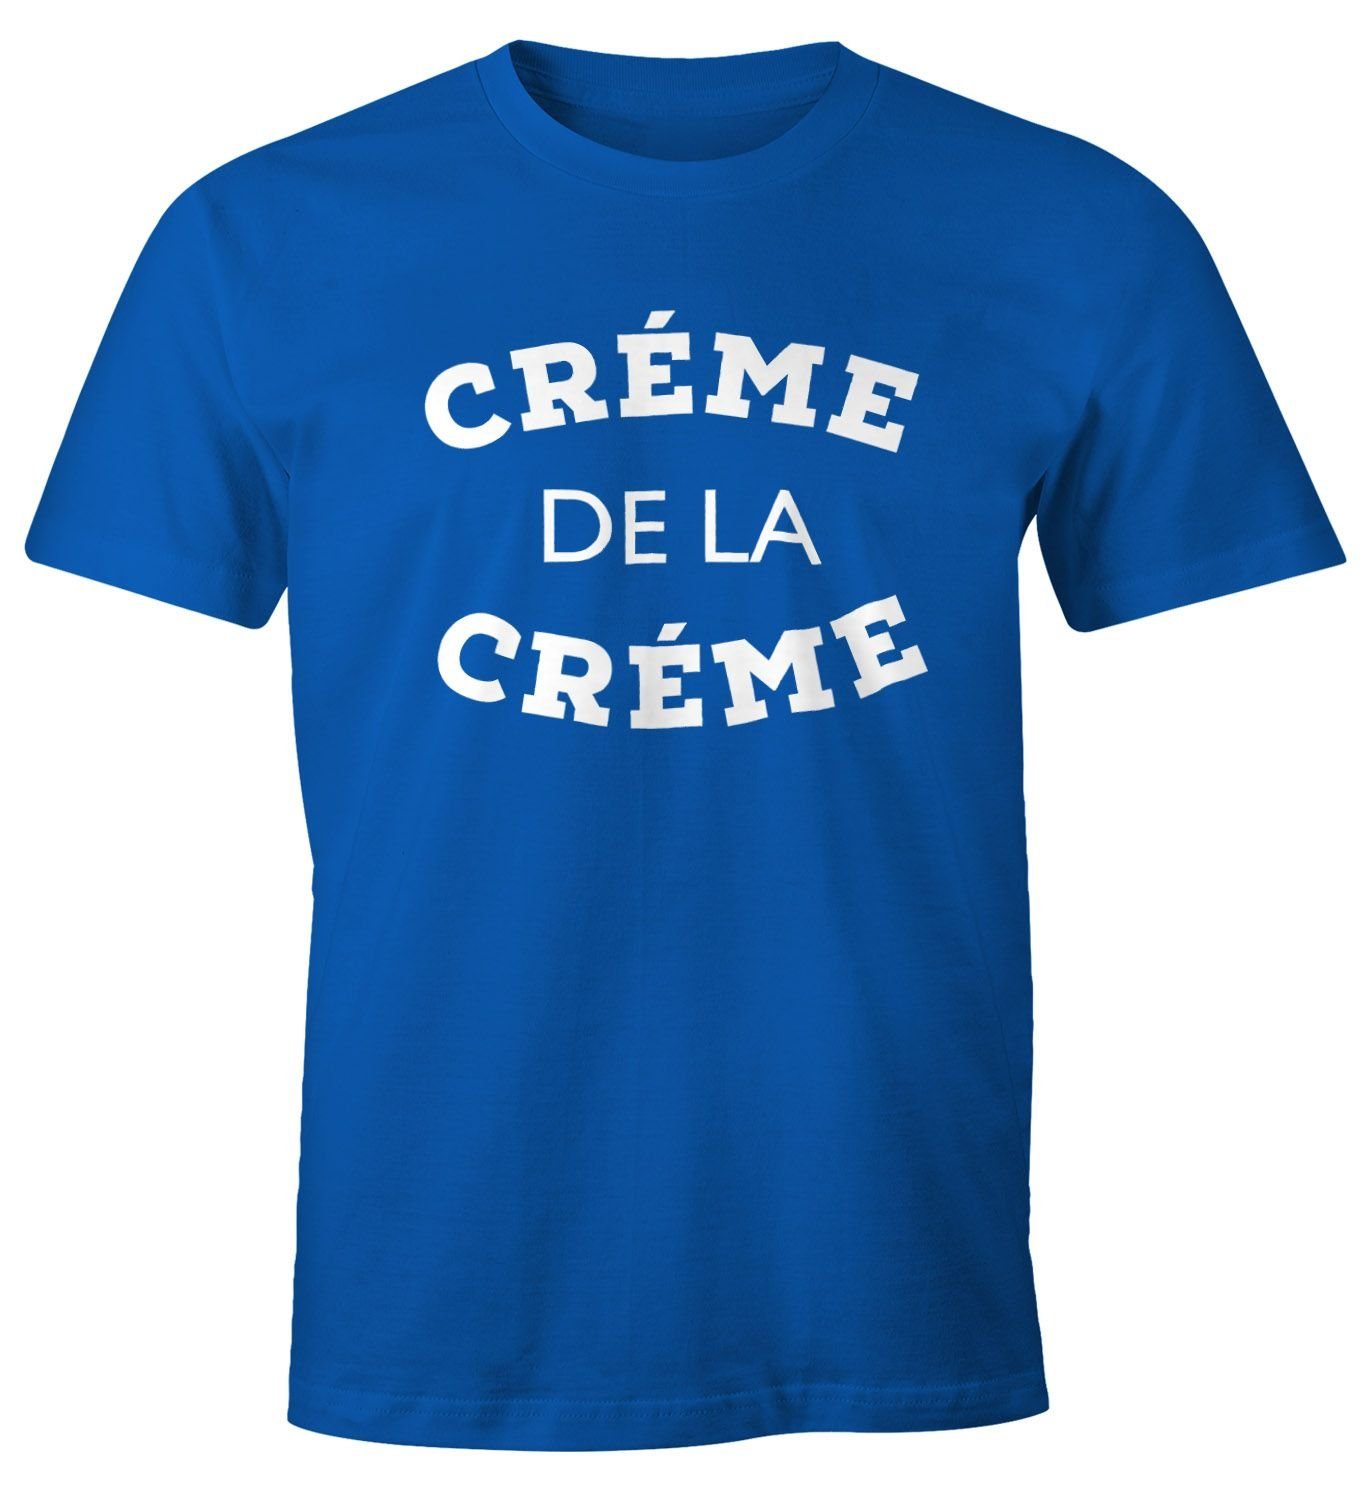 Print-Shirt mit Fun-Shirt Creme Moonworks® blau Creme Herren MoonWorks T-Shirt Print la de